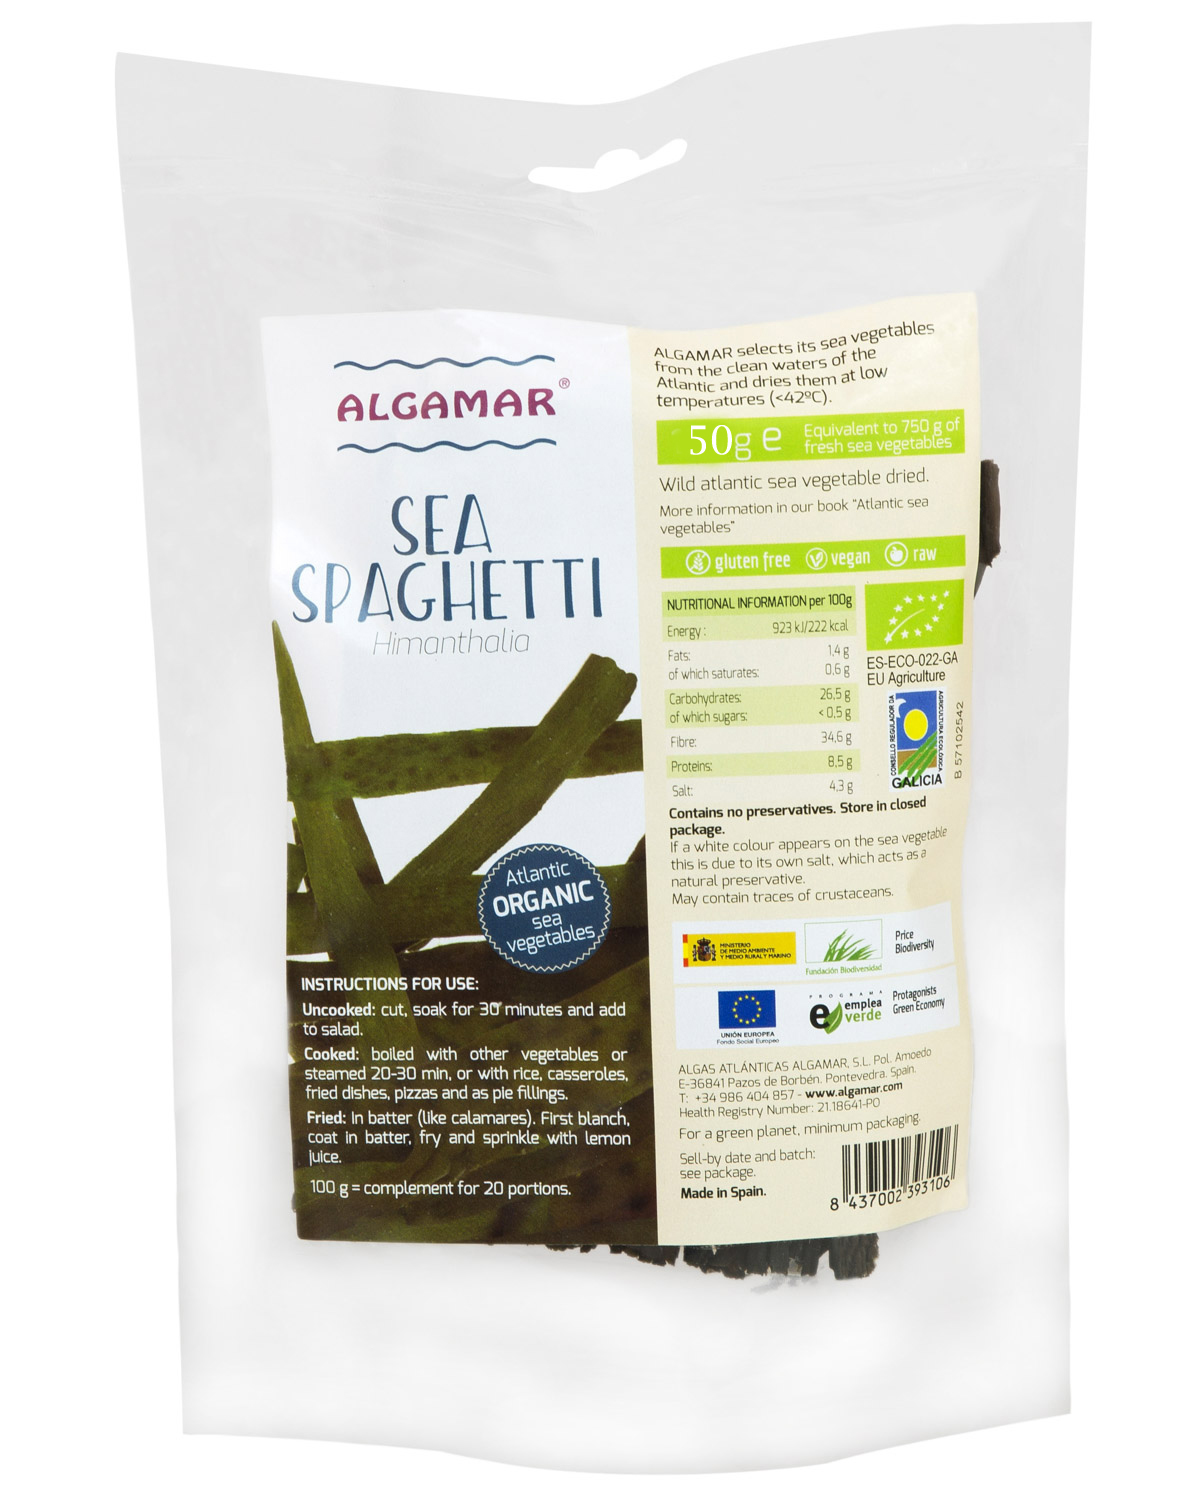 <h2>Sea Spaghetti bio 50g</h2><p>Algele marine marca Algamar sunt toate alge salbatice, recoltate de pe coastele nepoluate ale regiunii Galicia din Spania. Exista si alge marine de cultura, insa nu pot fi comparate calitativ si nutritional cu cele salbatice. Un alt mare avantaj al algelor salbatice Algamar este ca sunt departe de sursele de radiatii. Japonia este printre cei mai mari furnizori de alge marine din lume (in special sushi si nori), insa multi iubitori de alge marine au inceput sa caute alte surse de alge in afara de Japonia, din cauza radiatiilor rezultate in urma exploziei nucleare de la Fukushima.</p><p>Algele marine sea spaghetti (<em>Himanthalia elongata)</em> sunt inlocuitorul perfect al spaghetelor pentru cei care apreciaza algele marine. Pot avea un gust de peste sarat, este indicat sa le spalati bine inainte sa le gatiti.</p><p>Mod de preparare:<br />-raw (crude): se taie in bucati mai mici, si se pun la inmuiat in apa timp de 30 de minute. Dupa 30 de minute pot fi adaugate in salate si consumate crude.<br />-gatite: se fierb timp de 20-30 de minute. Se pot servi cu orez, quinoa, hrisca, in pizza, practic le puteti adauga langa aproape orice fel de garnitura.<br />-prajite: se clatesc bine, se prajesc in ulei de palmier sau de cocos, si cand sunt gata, se stropesc cu zeama de lamaie.</p><p>Valori nutritionale/100g:<br /><span style="box-sizing: border-box; color: #666666; font-family: Cabin, sans-serif; font-size: 16px; text-align: justify;">Energie: 923 Kj/222 kcal</span><br style="box-sizing: border-box; color: #666666; font-family: Cabin, sans-serif; font-size: 16px; text-align: justify;" /><span style="box-sizing: border-box; color: #666666; font-family: Cabin, sans-serif; font-size: 16px; text-align: justify;">Grasimi: 1.4g din care saturate 0.6g</span><br style="box-sizing: border-box; color: #666666; font-family: Cabin, sans-serif; font-size: 16px; text-align: justify;" /><span style="box-sizing: border-box; color: #666666; font-family: Cabin, sans-serif; font-size: 16px; text-align: justify;">Carbohidrati: 26.5g din care zaharuri &lt; 0.5g</span><br style="box-sizing: border-box; color: #666666; font-family: Cabin, sans-serif; font-size: 16px; text-align: justify;" /><span style="box-sizing: border-box; color: #666666; font-family: Cabin, sans-serif; font-size: 16px; text-align: justify;">Proteine: 8.5g</span><br style="box-sizing: border-box; color: #666666; font-family: Cabin, sans-serif; font-size: 16px; text-align: justify;" /><span style="box-sizing: border-box; color: #666666; font-family: Cabin, sans-serif; font-size: 16px; text-align: justify;">Fibre: 34.6g</span><br style="box-sizing: border-box; color: #666666; font-family: Cabin, sans-serif; font-size: 16px; text-align: justify;" /><span style="box-sizing: border-box; color: #666666; font-family: Cabin, sans-serif; font-size: 16px; text-align: justify;">Saruri: 4.3g</span></p><p>Produs certificat organic</p><p>Tara de origine: Spania</p><p>50g</p>